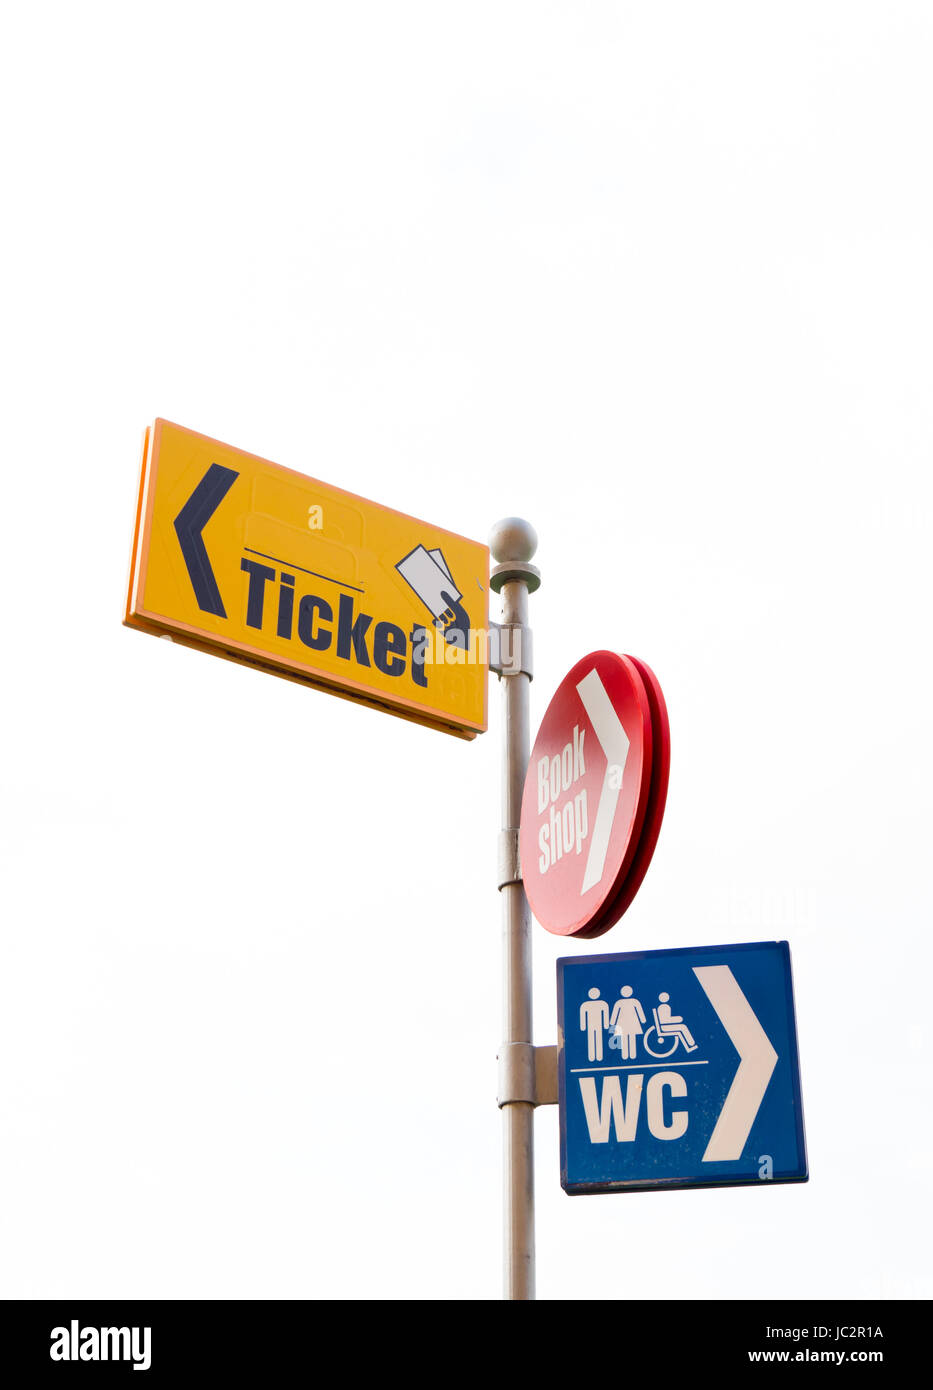 Il concetto di turismo - cartelli segnaletici stradali utilizzati in luoghi turistici: ticket, book shop, wc. Foto Stock